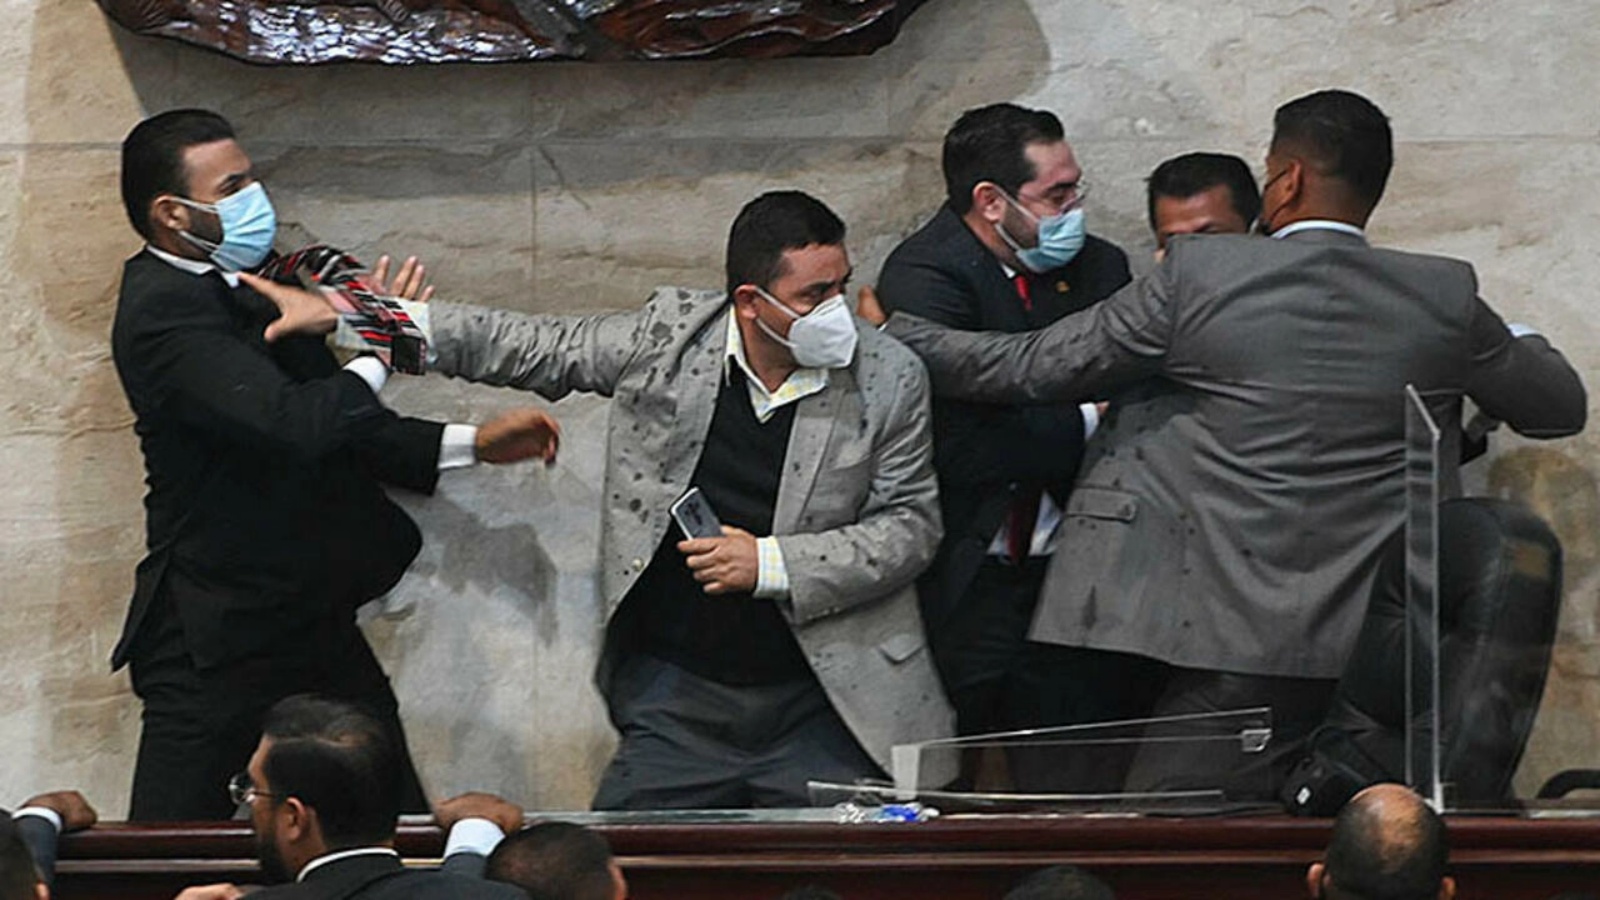 النائب راسل توميه (يسار) من حزب الحرية إعادة التأسيس يهاجم النائب خورخي كاليكس (الثاني من اليسار) بعد أدائه اليمين كرئيس للبرلمان في عاصمة هندوراس تيغوسيغالبا في 21 يناير 2022